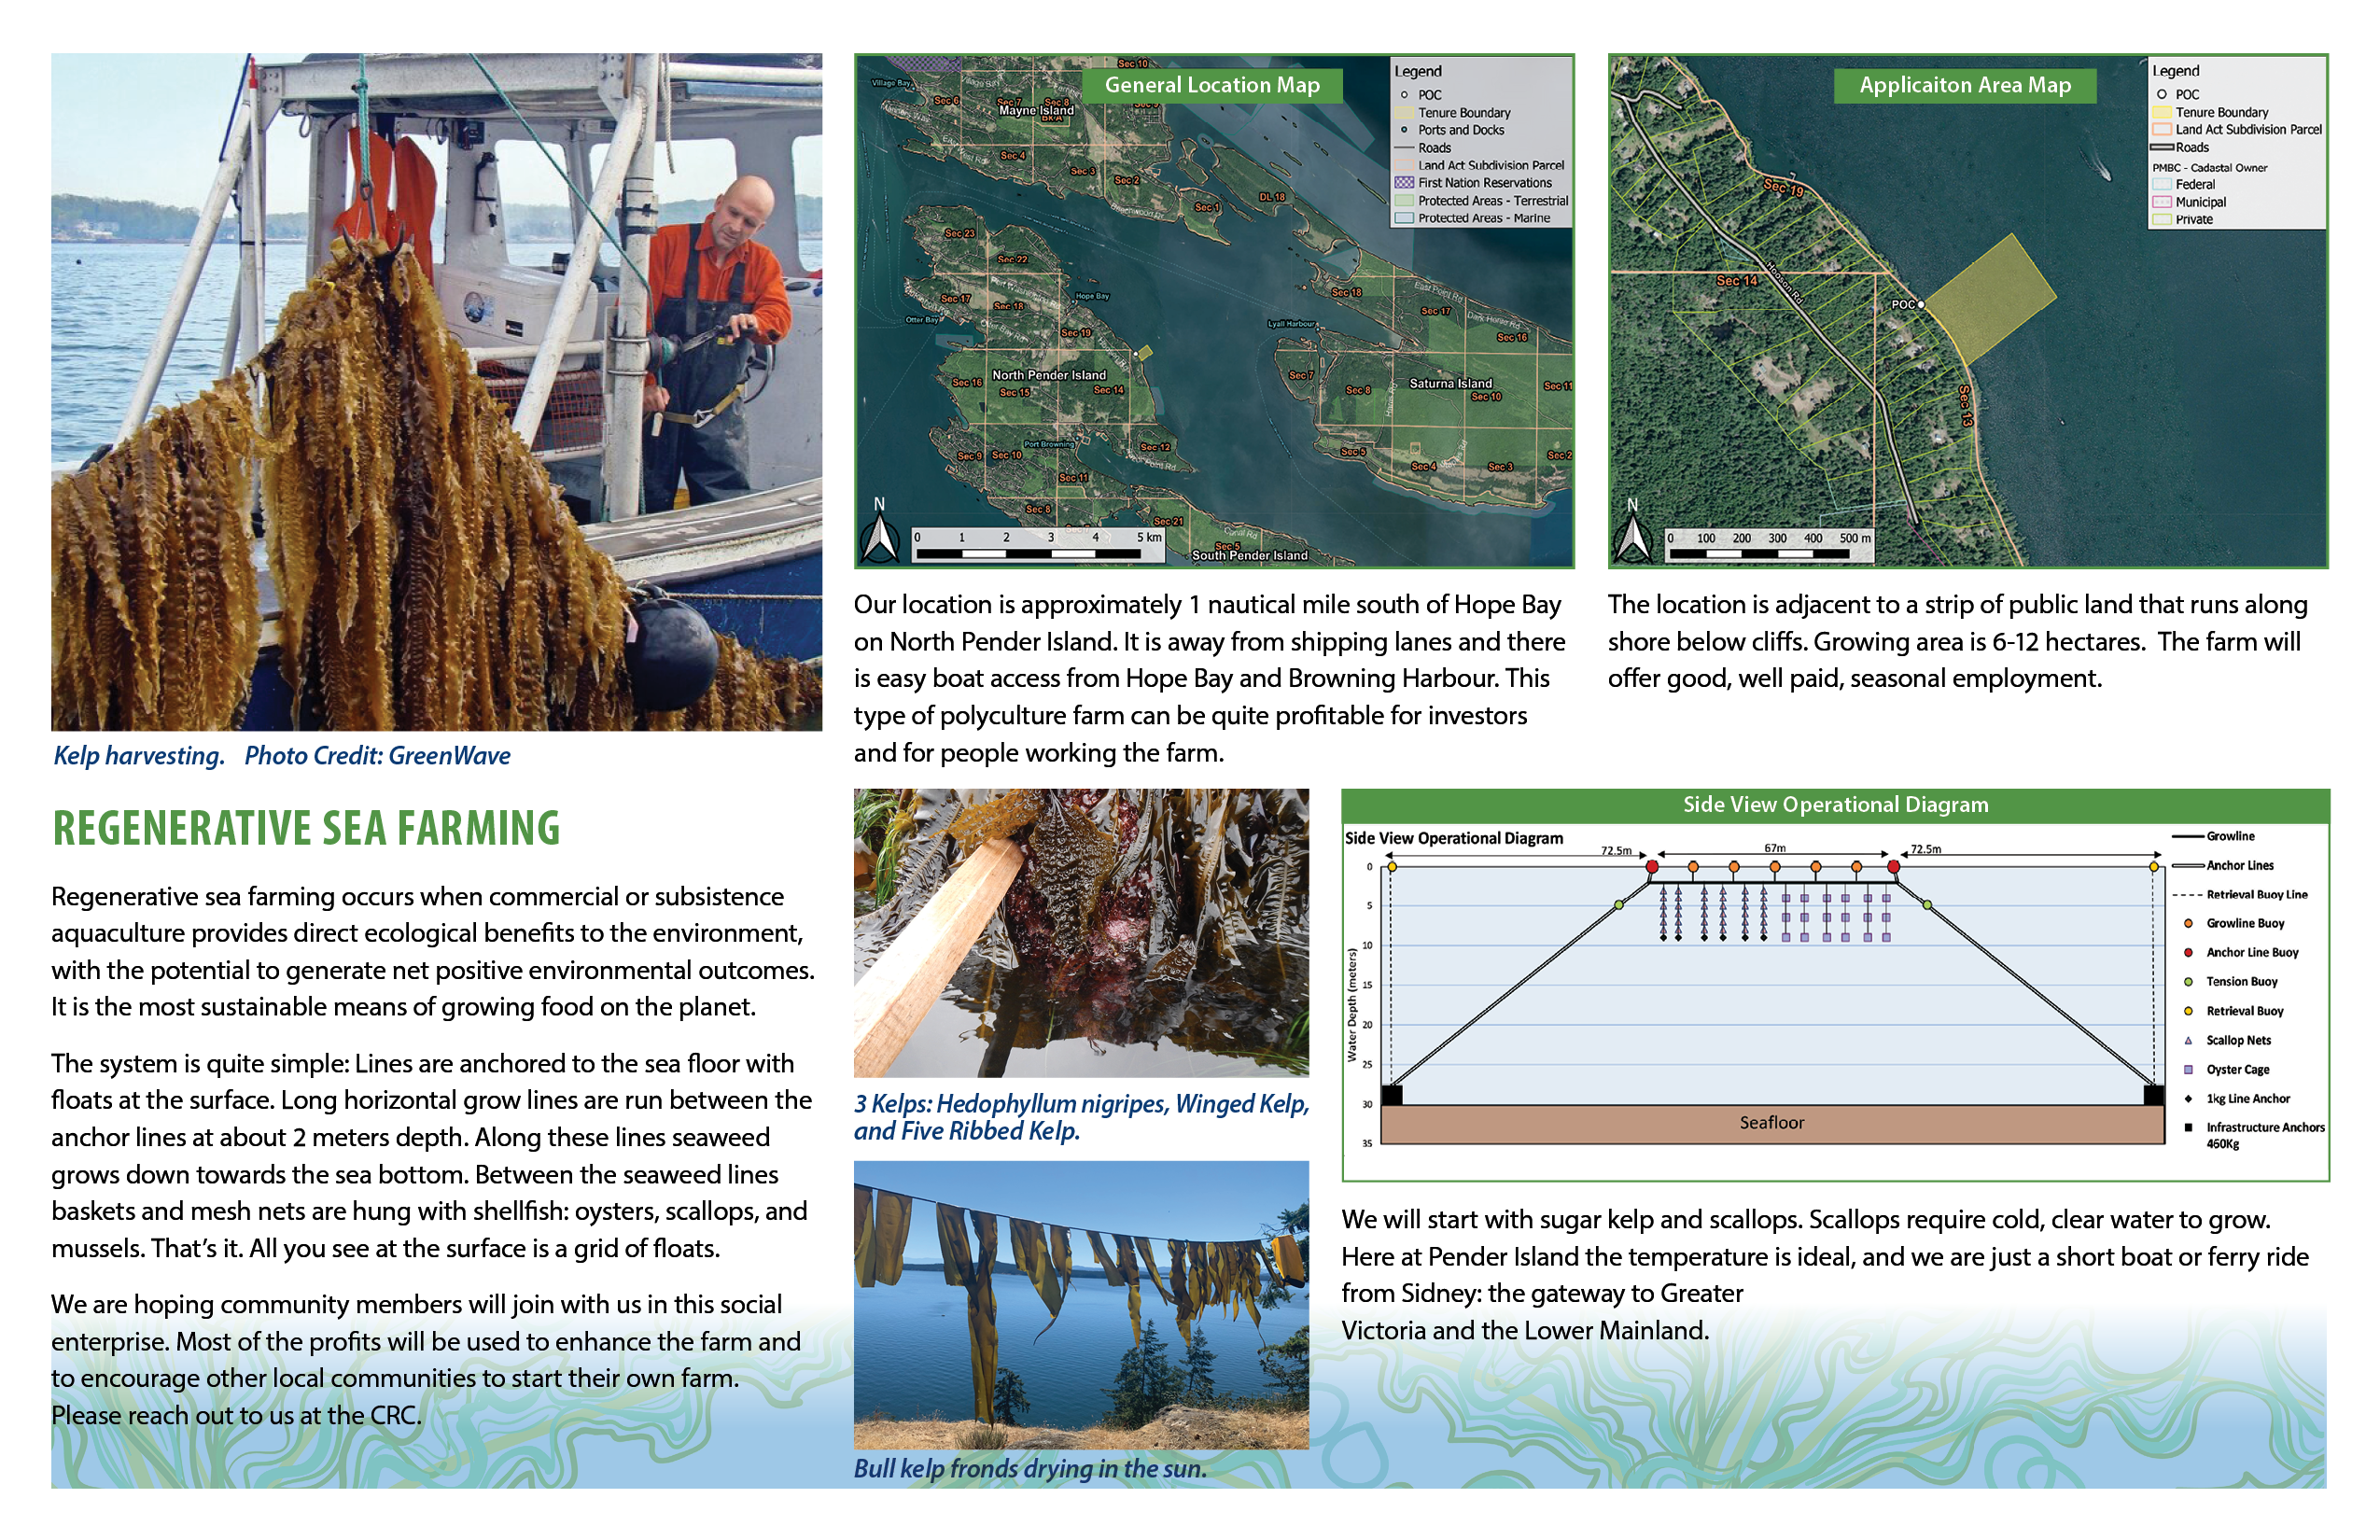 Regenerative Sea farming descriptions and pictures